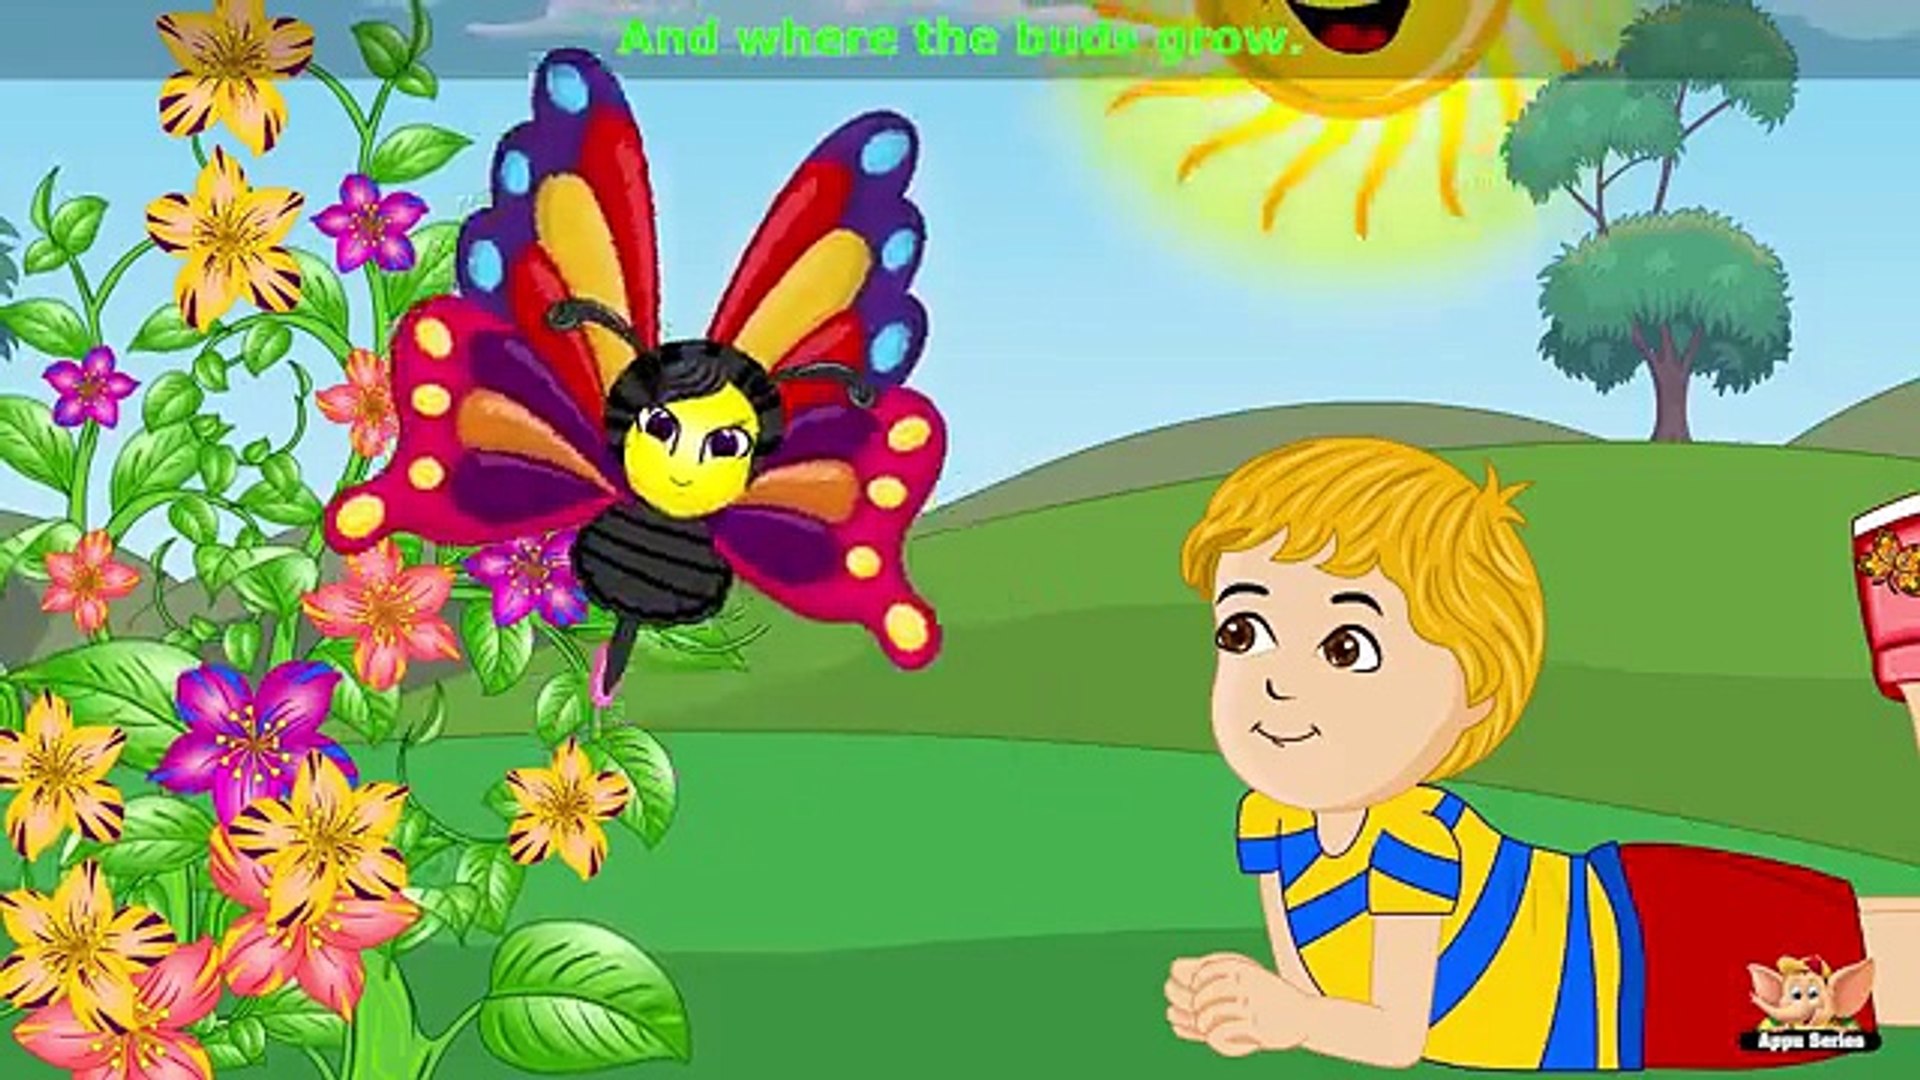 Butterfly, Butterfly - Nursery Rhyme with Karaoke